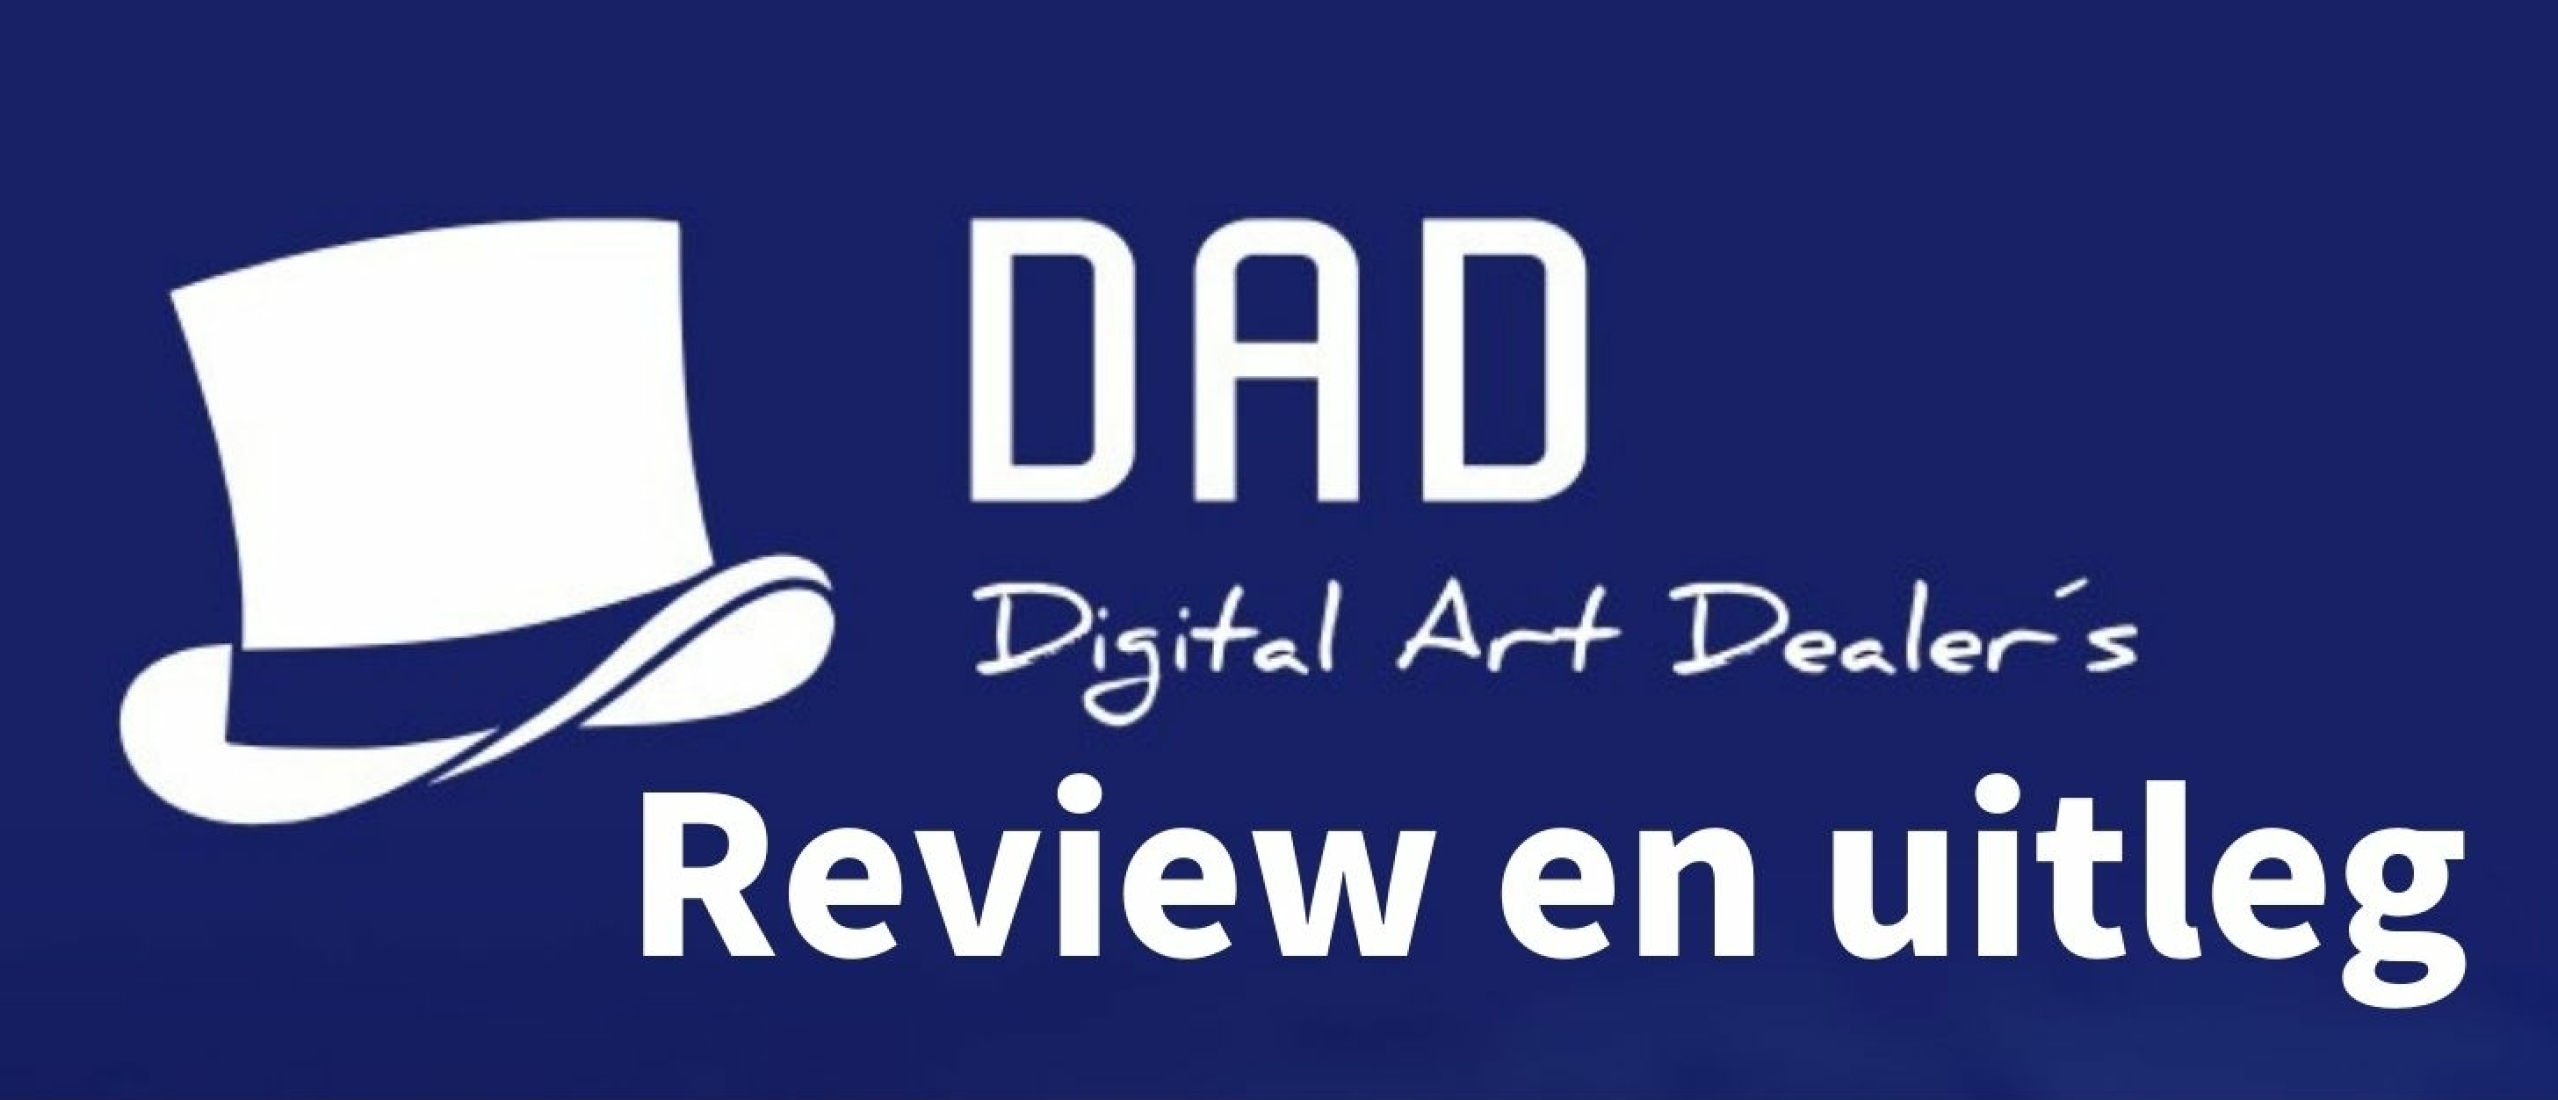 DAD (Digital Art Dealers) Passief verdienen met NFT's